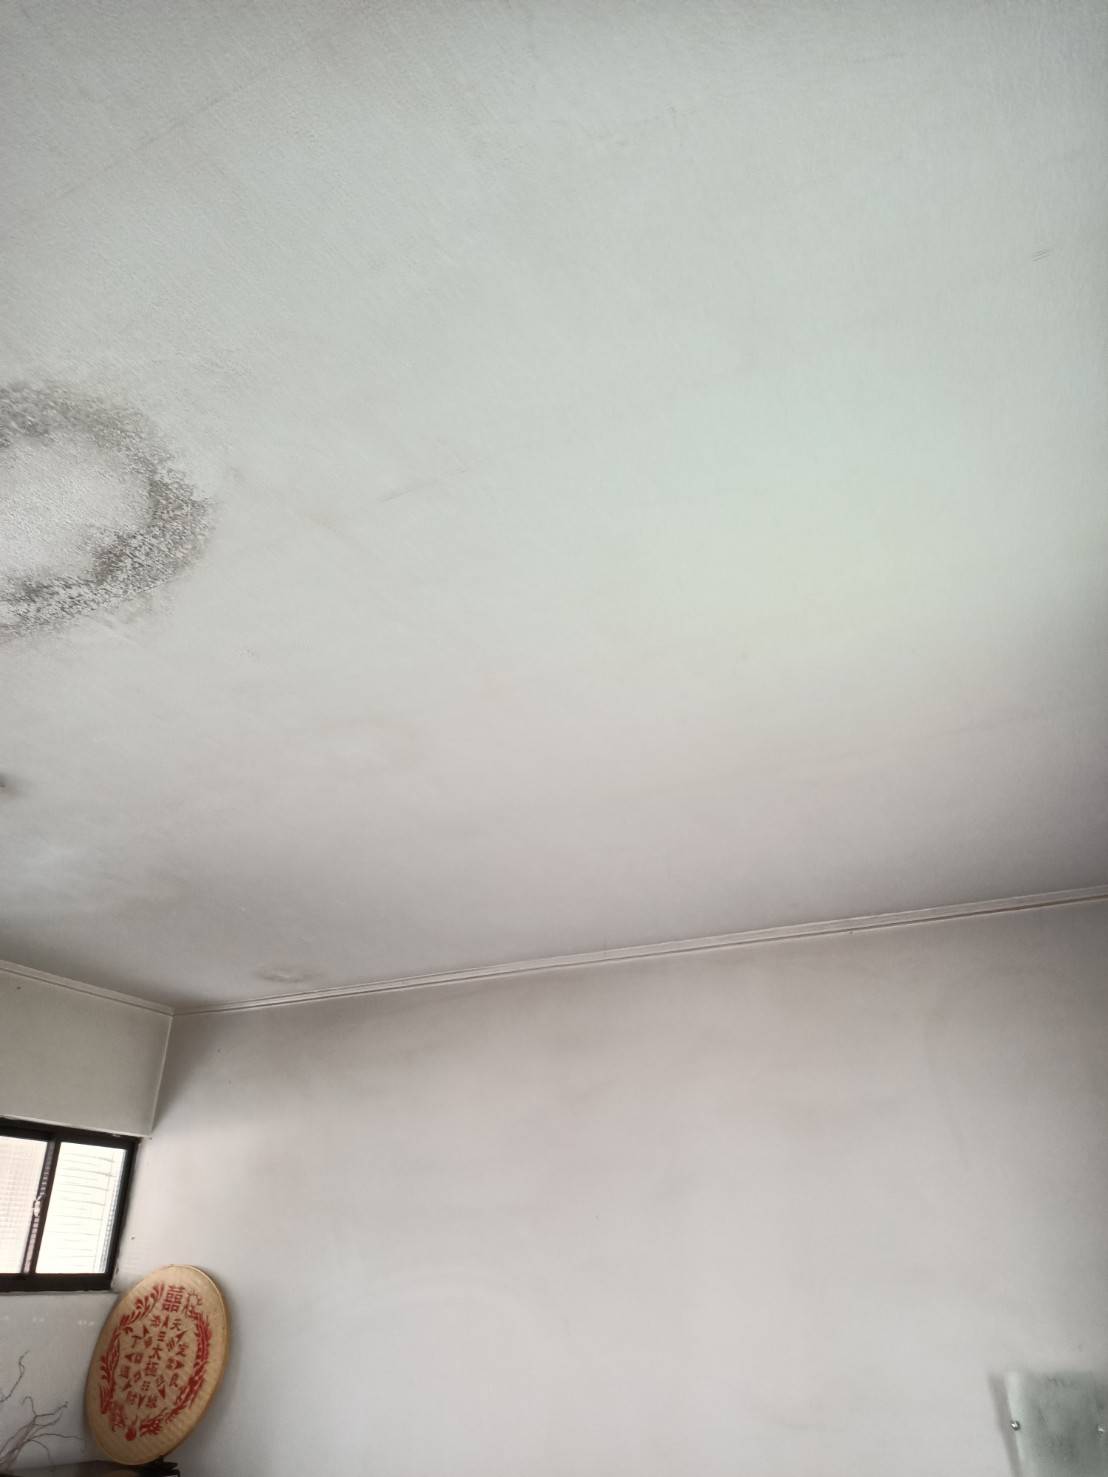 【高雄房屋修繕】天花板壁紙為什麼需要更換?亨隆統包工程來告訴您~